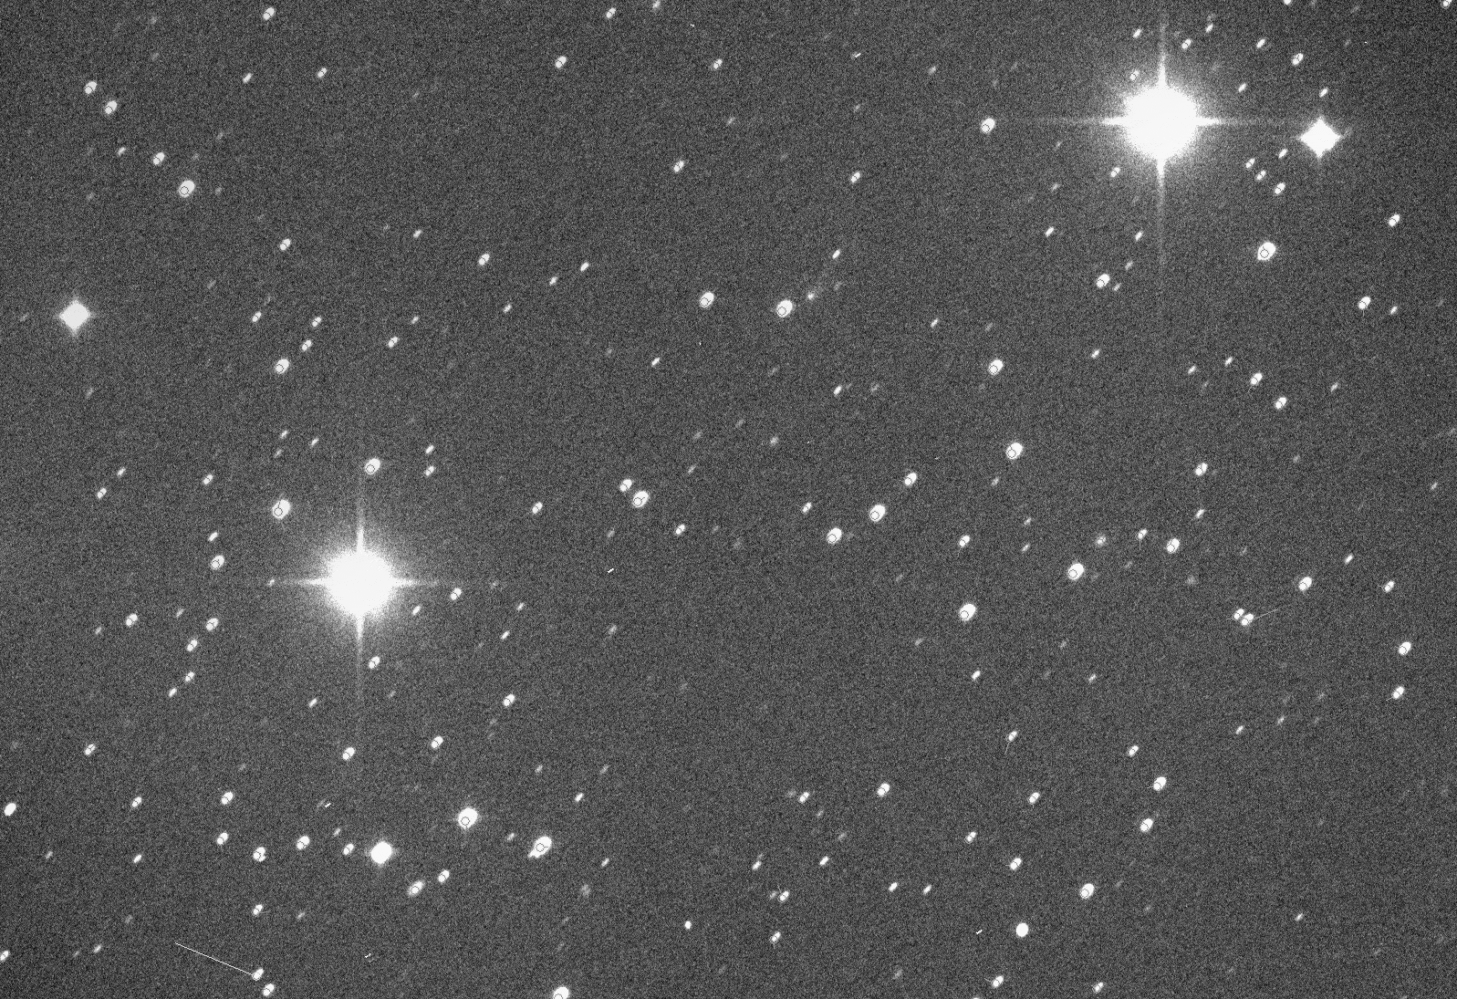 La comète interstellaire 2I/Borisov photographiée le 11 octobre 2019 à Weißenkirchen, en Autriche, par l’excellent astrophotographe Michael Jäger. © Michael Jäger, Spaceweather